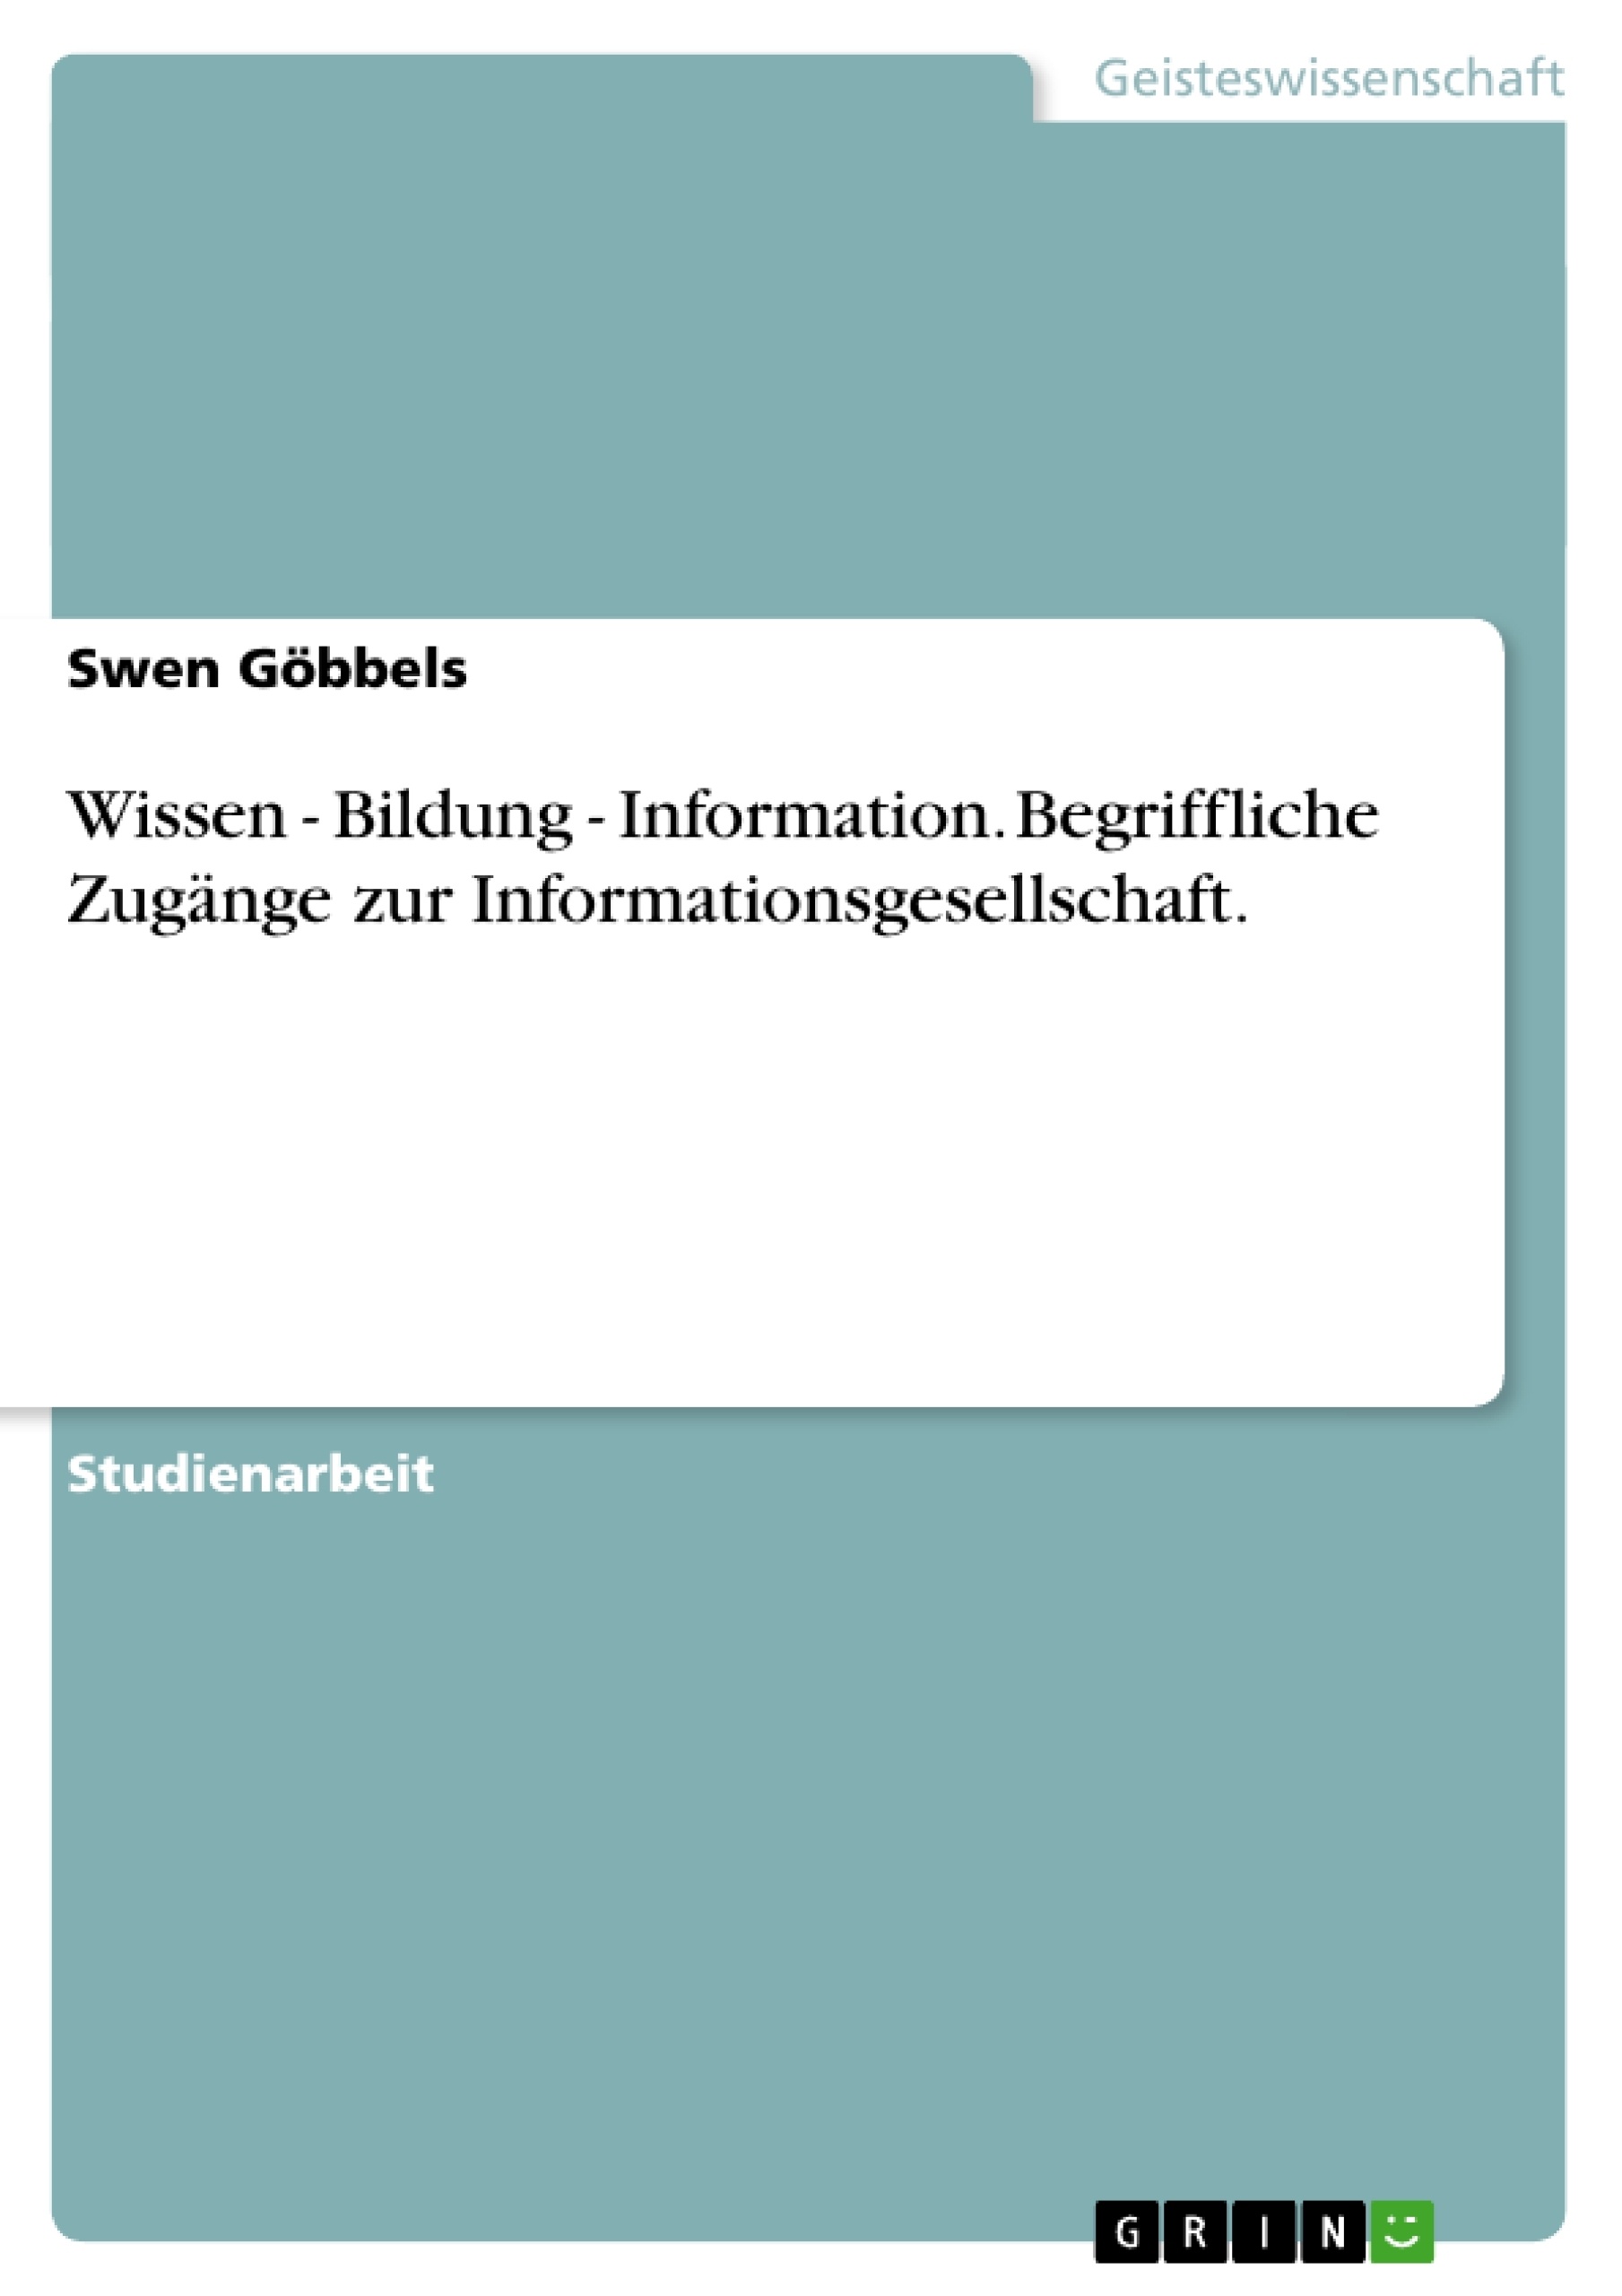 Título: Wissen - Bildung - Information. Begriffliche Zugänge zur Informationsgesellschaft.